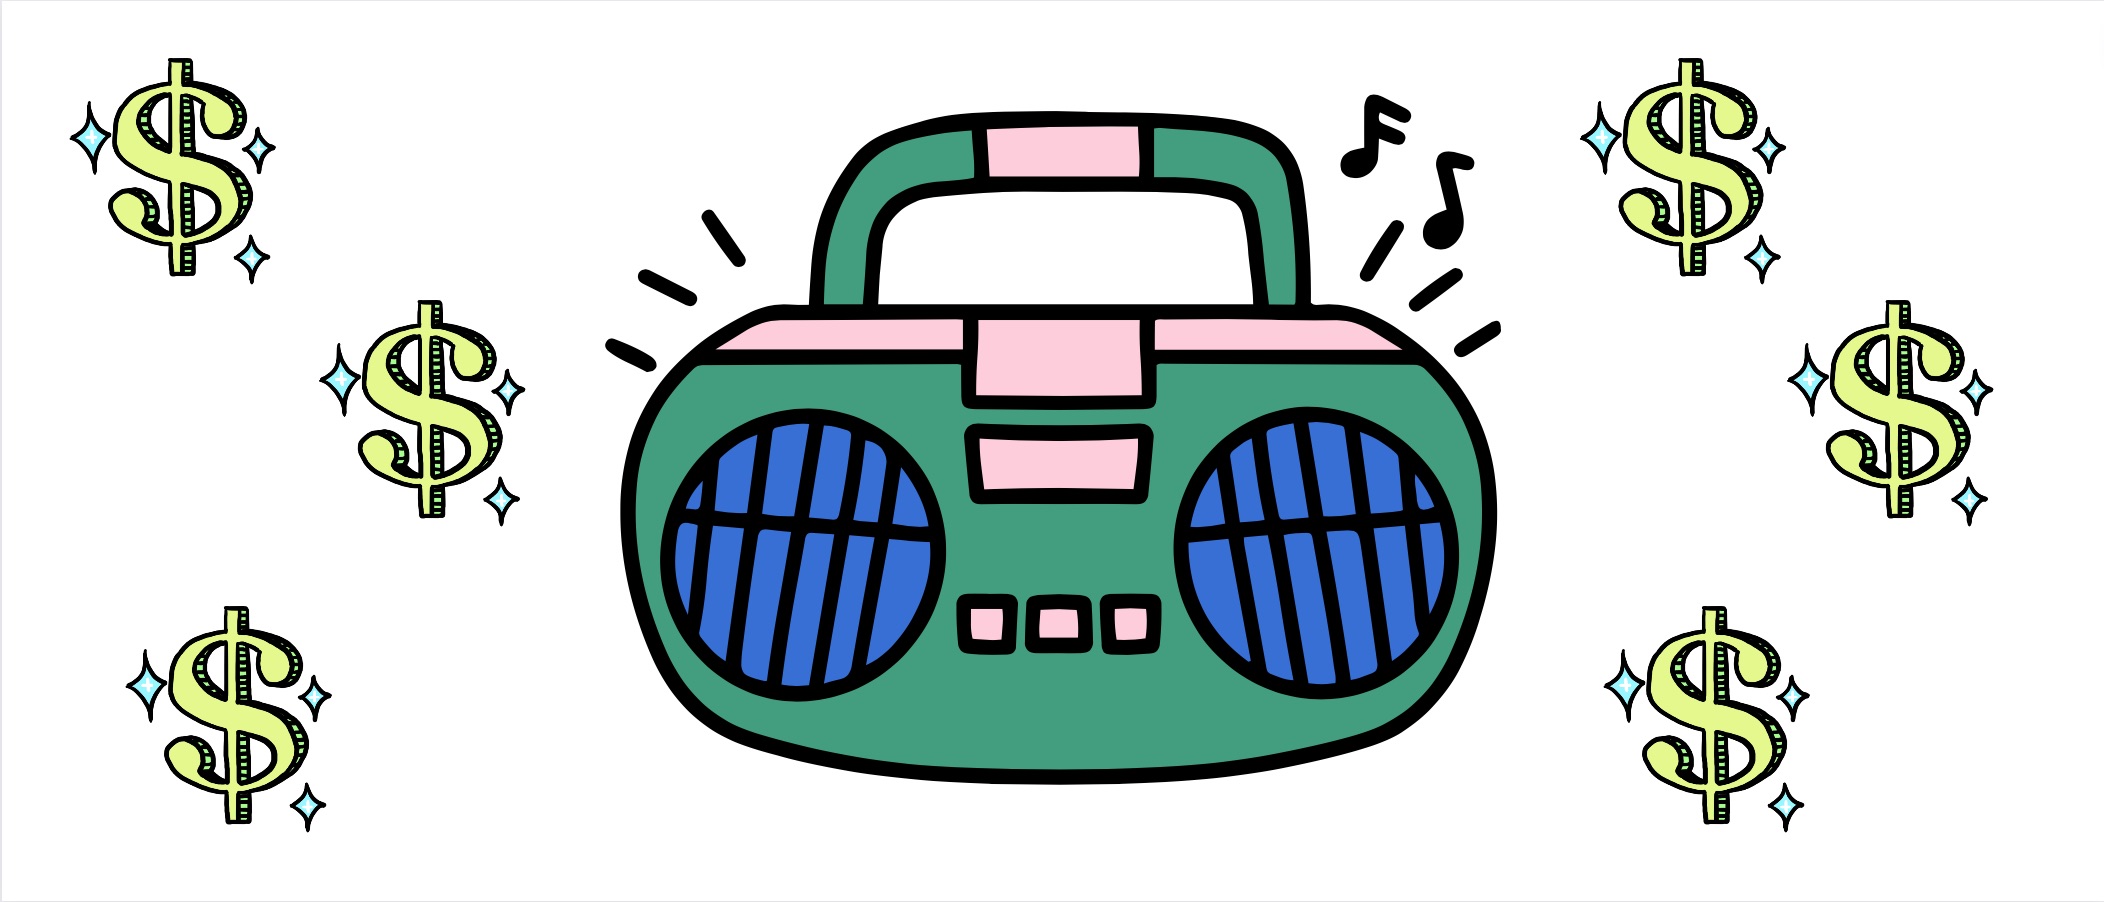 Sa Re Ga Ma’s Carvaan: история успеха болливудского музыкального автомата, который пел на мелодию стоимостью 264 миллиона долларов США